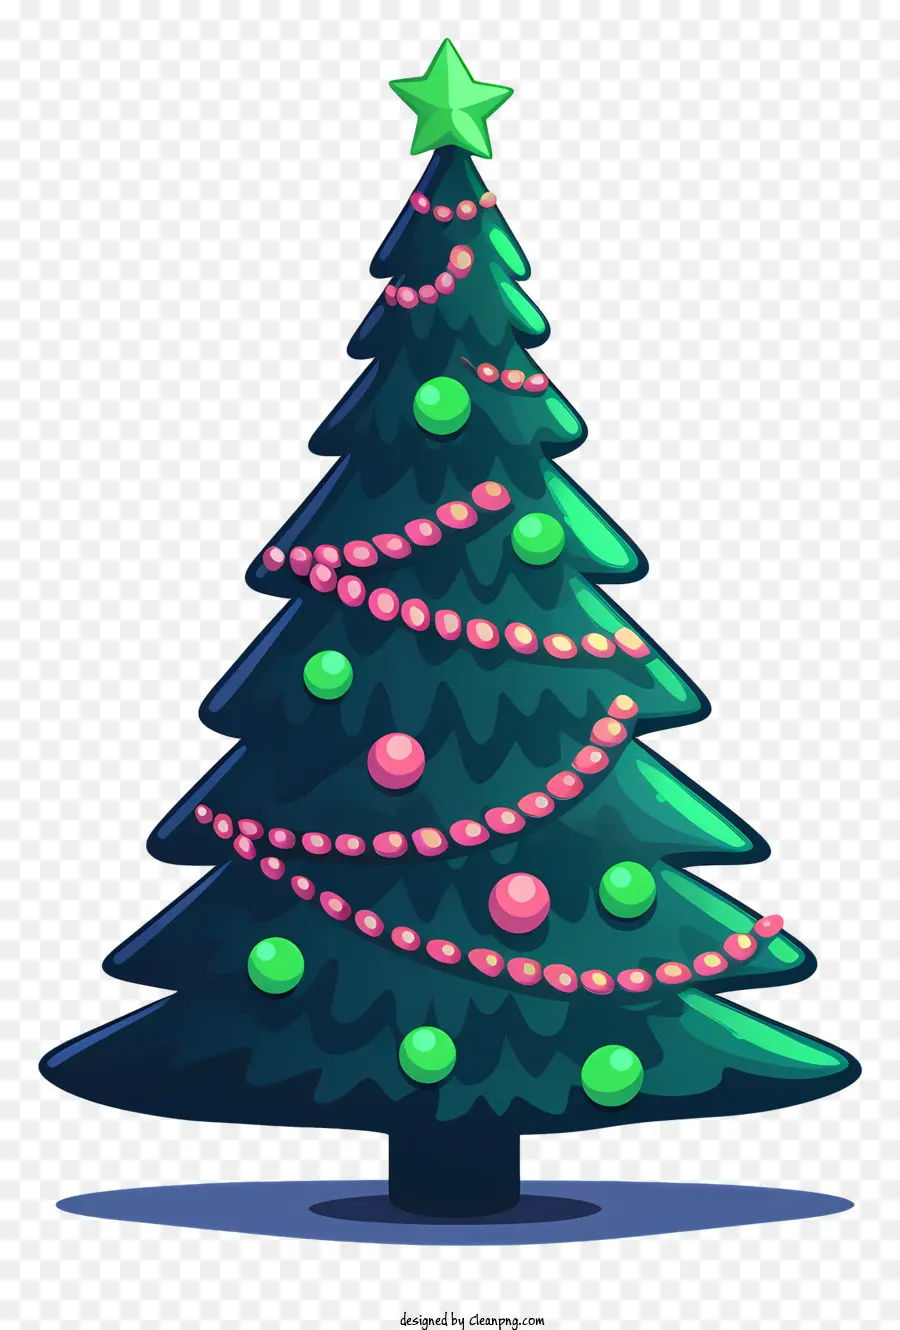 Weihnachtsbaum - Weihnachtsbaum aus grünen und roten Ornamenten